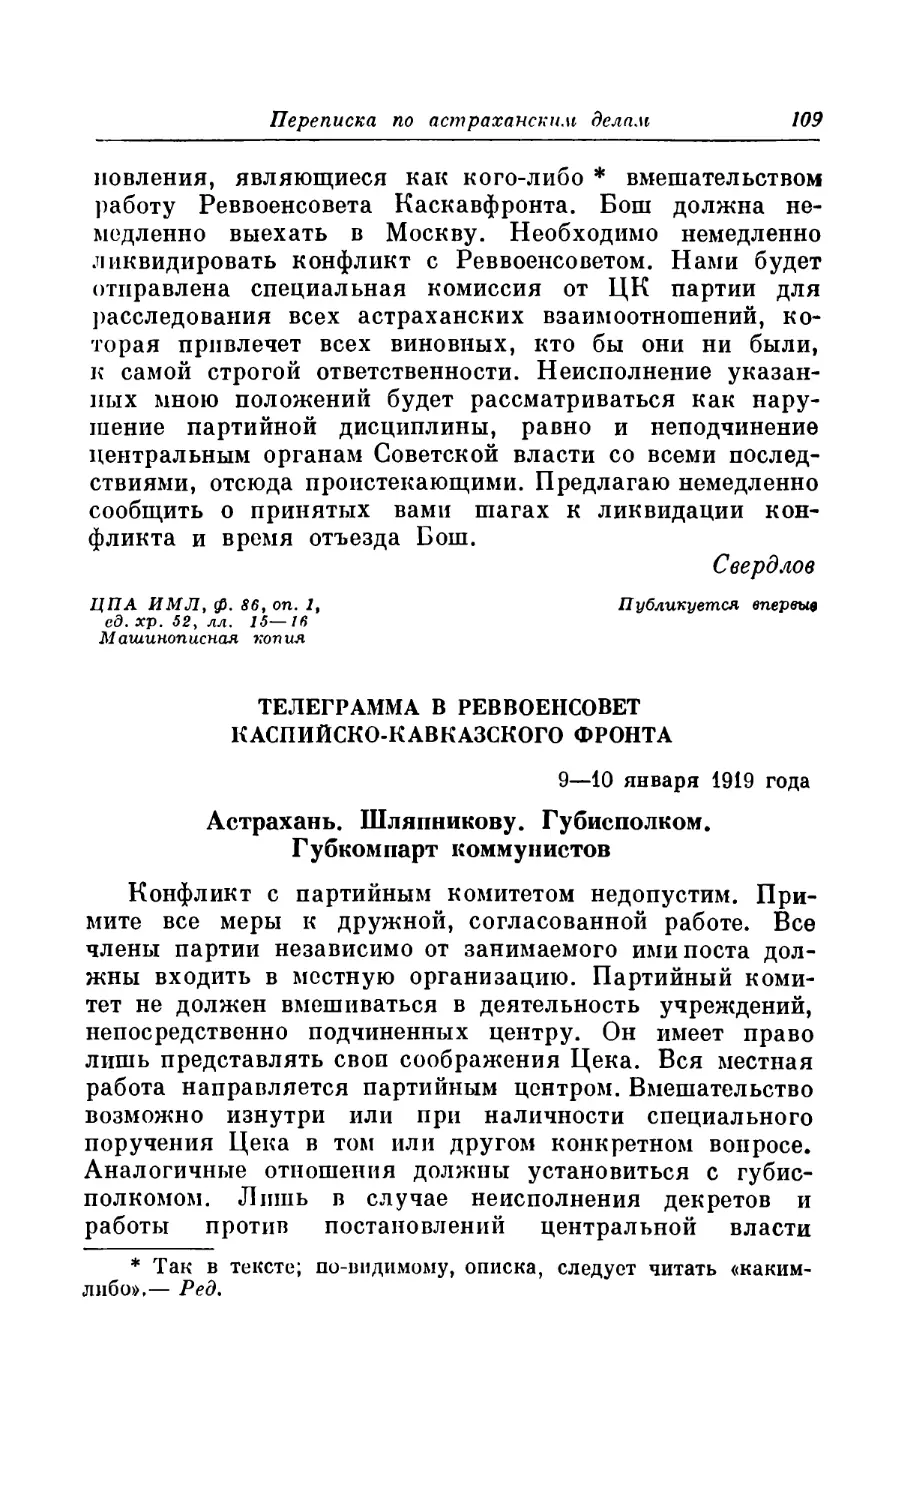 ТЕЛЕГРАММА В РЕВВОЕНСОВЕТ КАСПИЙСКО-КАВКАЗСКОГО ФРОНТА. 9 — 10 января 1919 года